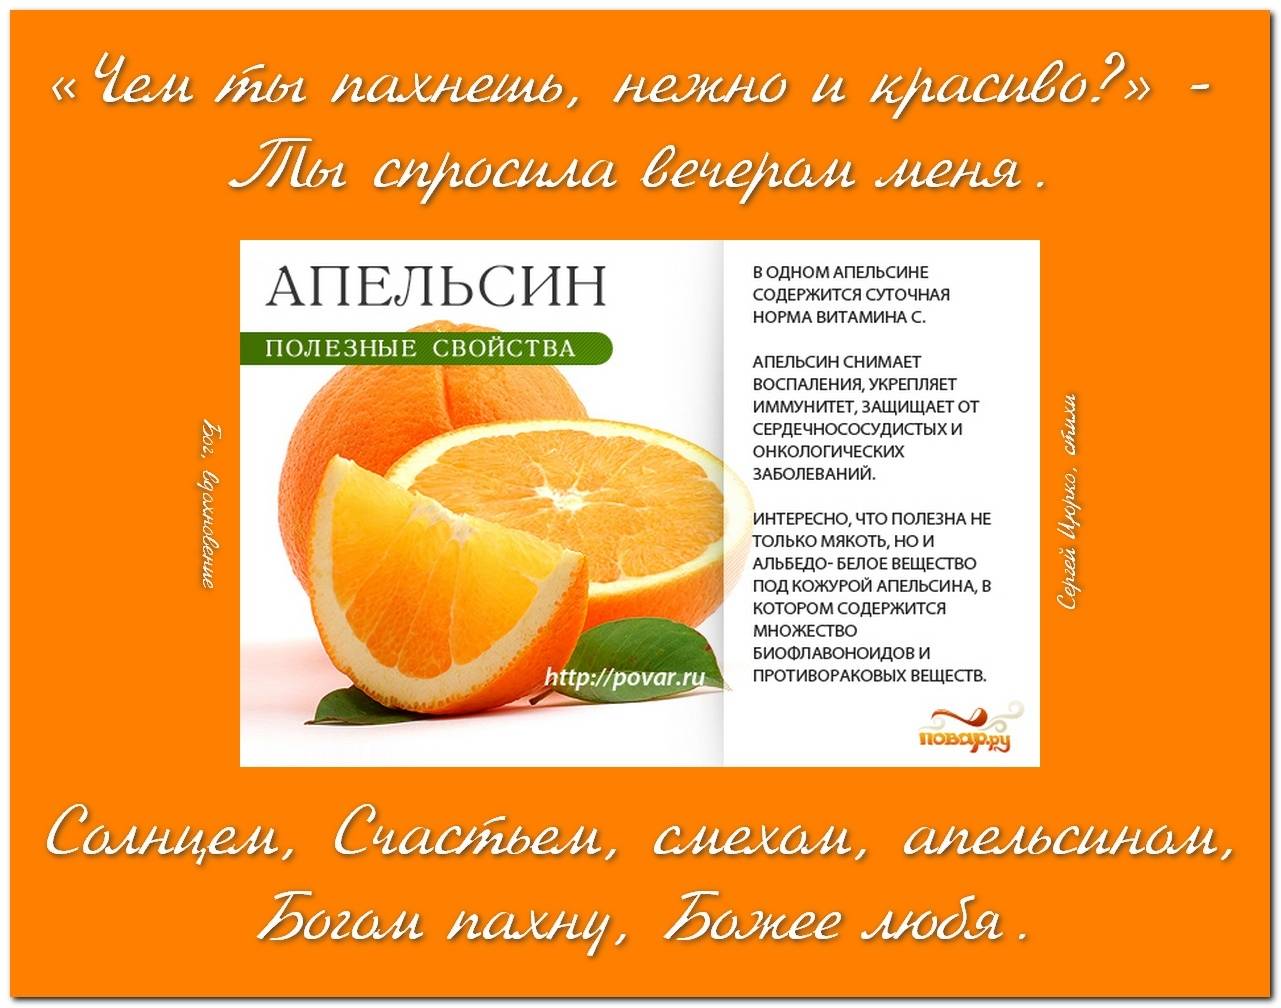 Мандарин витамины содержит. Апельсин польза. Полезные свойства апельсина. Что полезно в апельсине. Полезные витамины в апельсине.